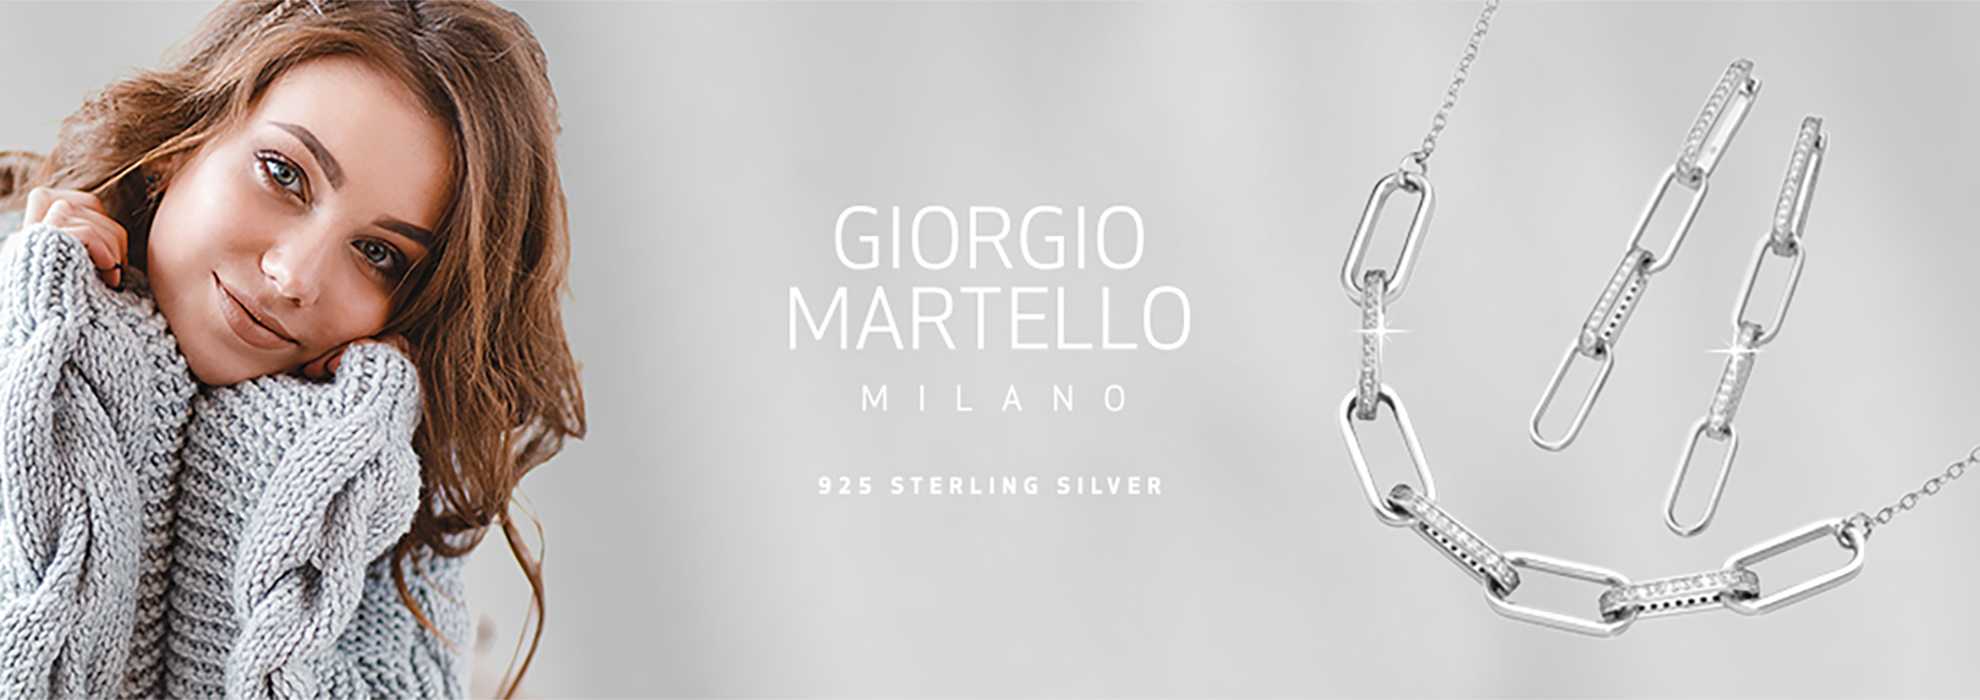 Giorgio Martello